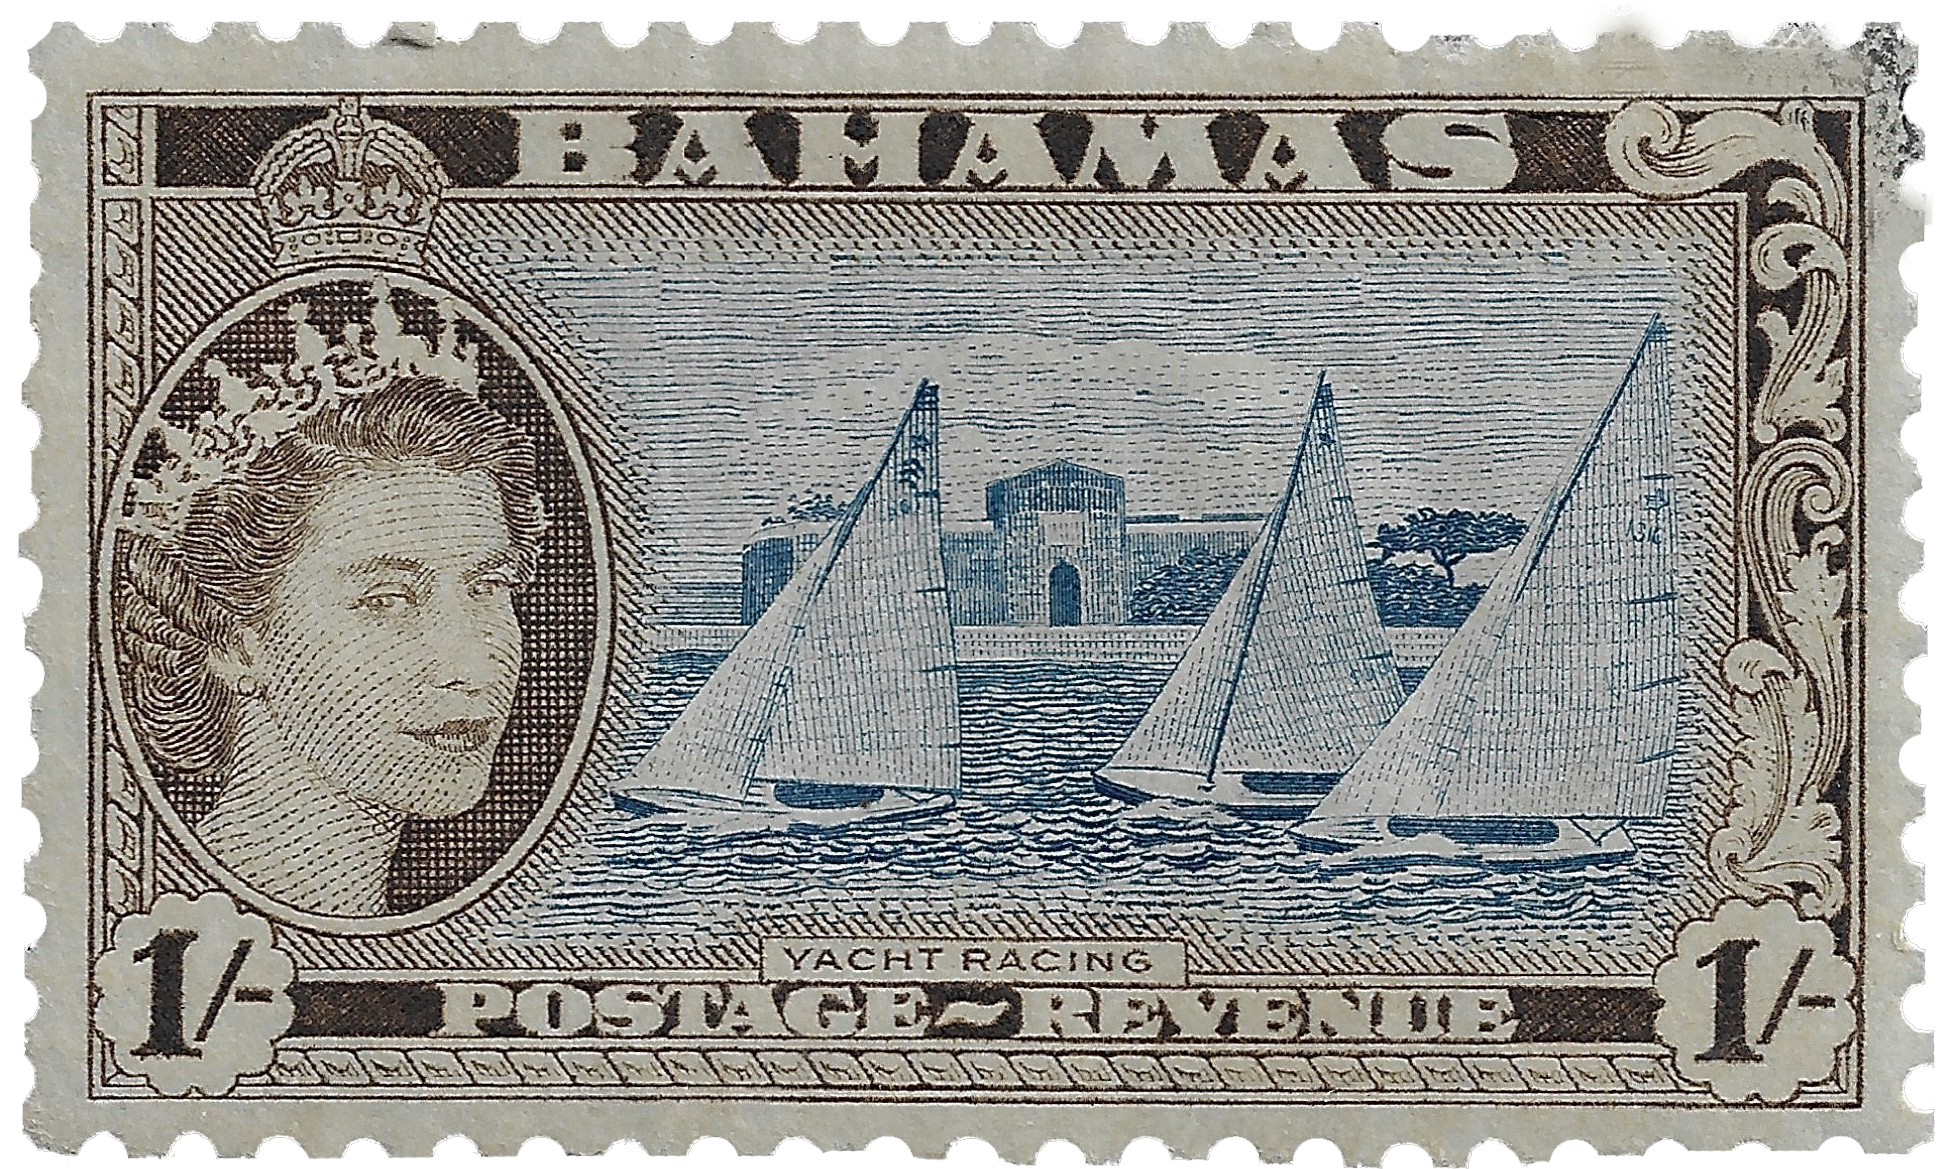 1s 1954, Yacht Racing